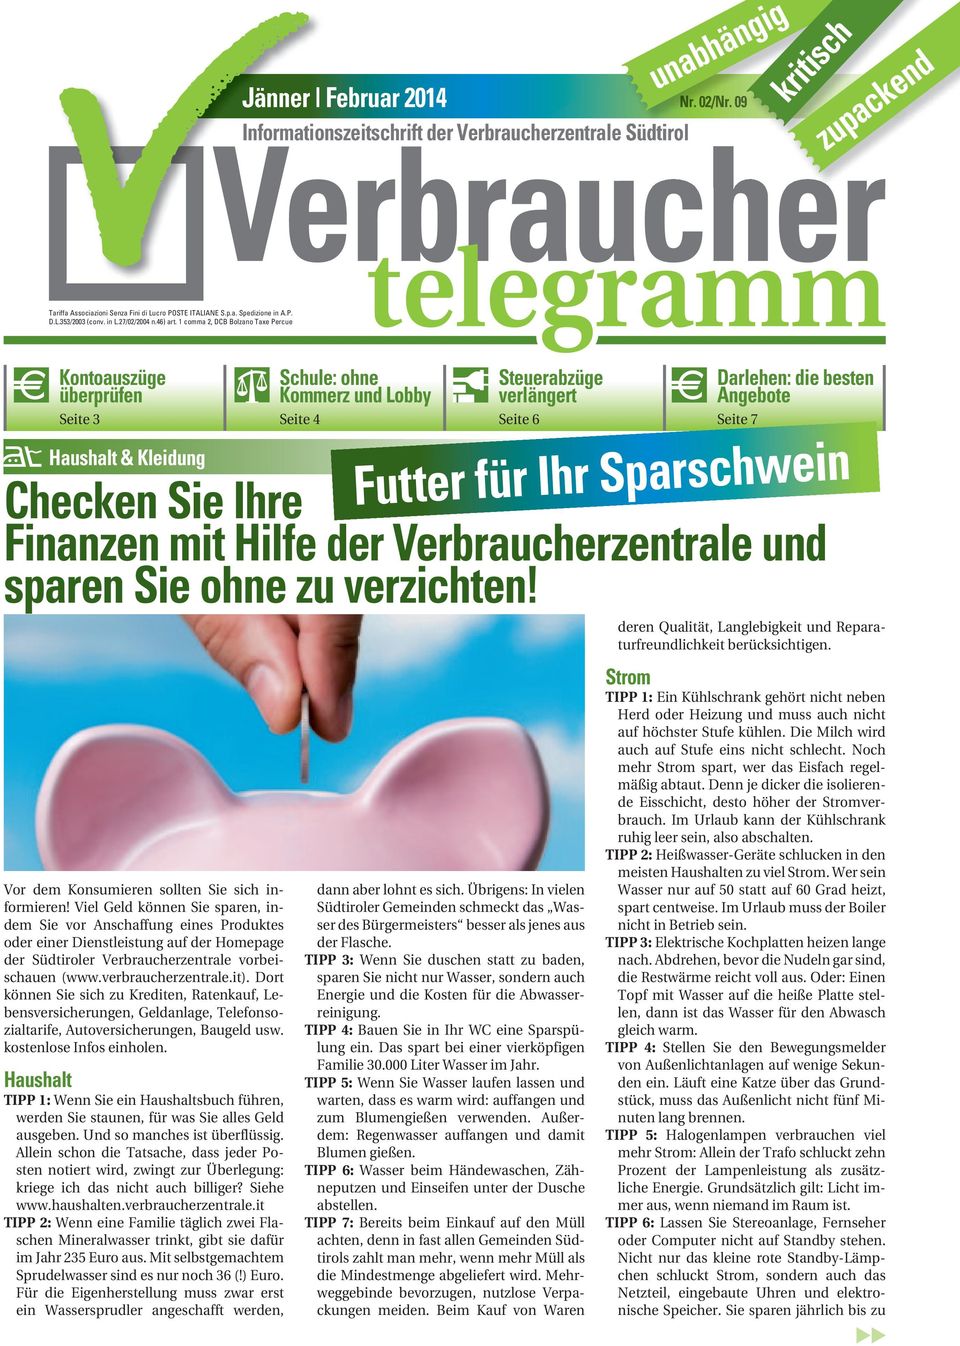 Viel Geld können Sie sparen, indem Sie vor Anschaffung eines Produktes oder einer Dienstleistung auf der Homepage der Südtiroler Verbraucherzentrale vorbeischauen (www.verbraucherzentrale.it).